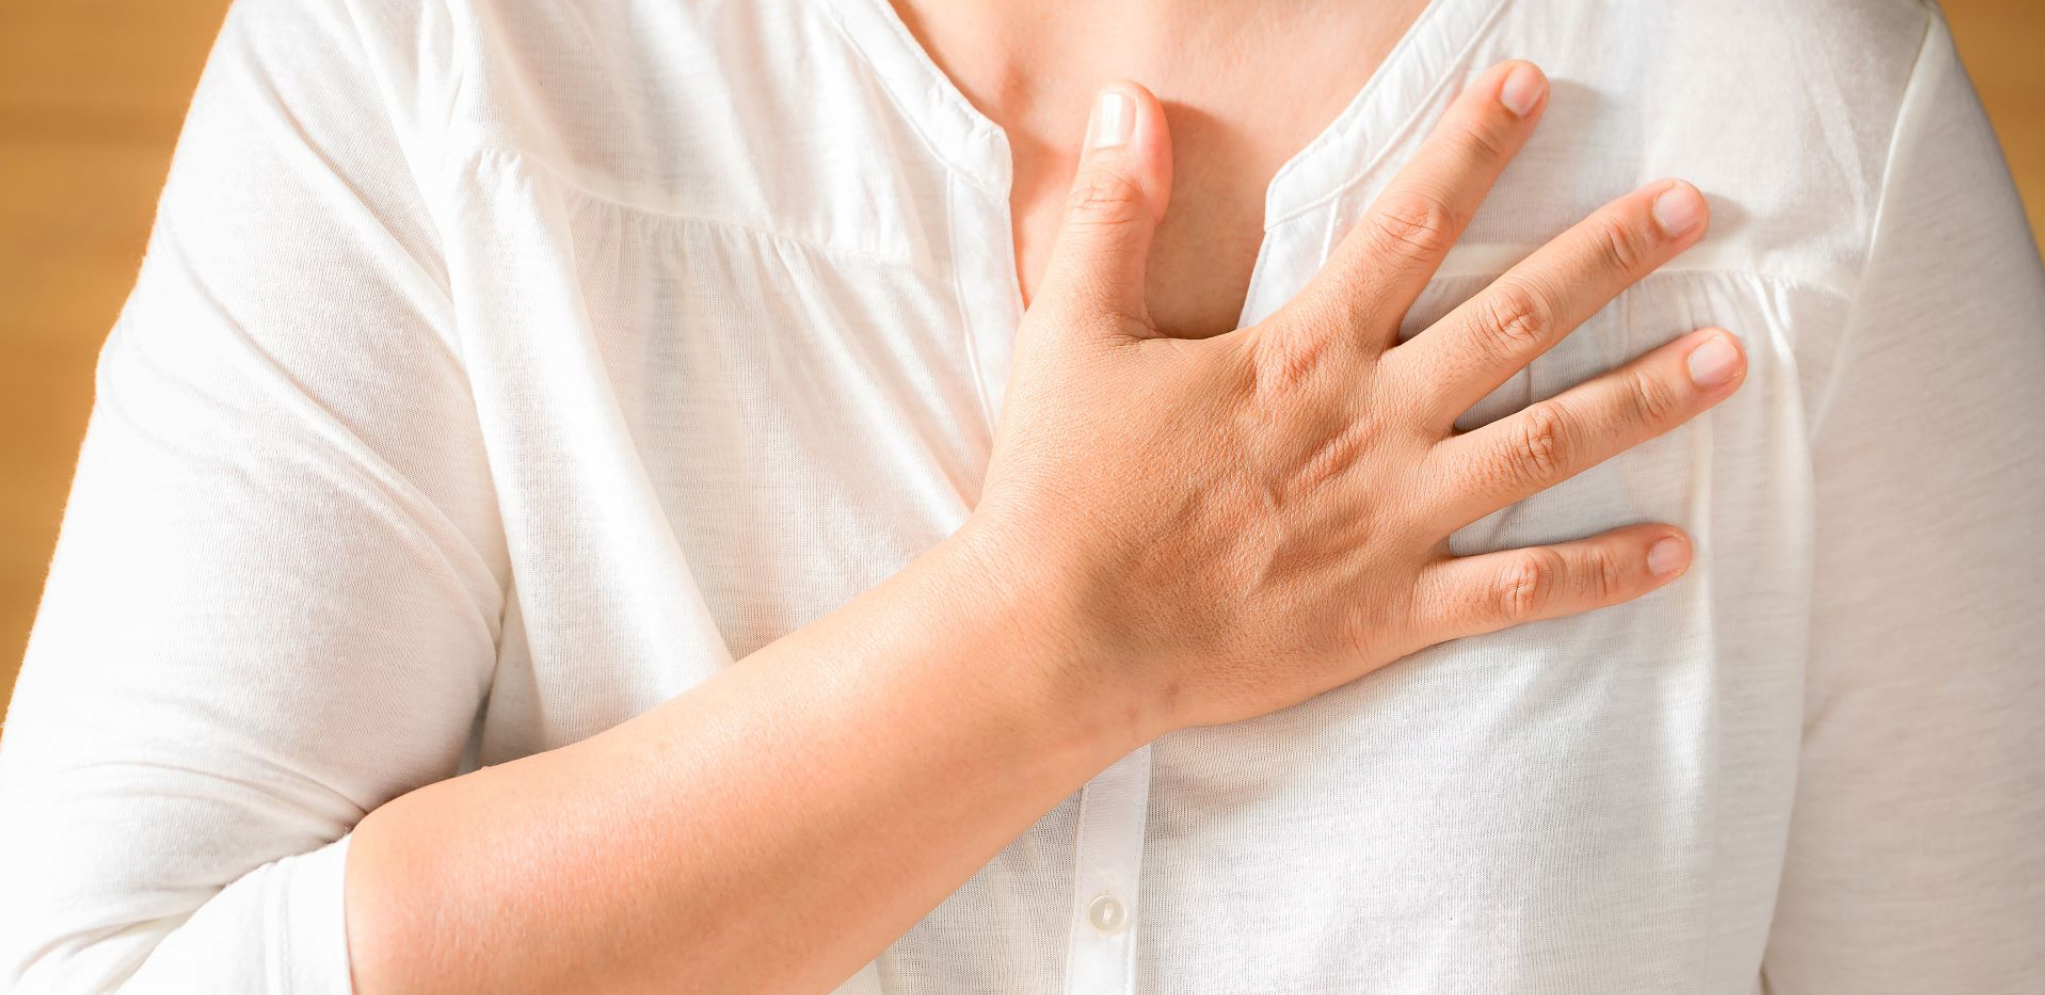 Obratite pažnju: Simptomi srčanog zastoja se mogu pojaviti i mesec dana ranije